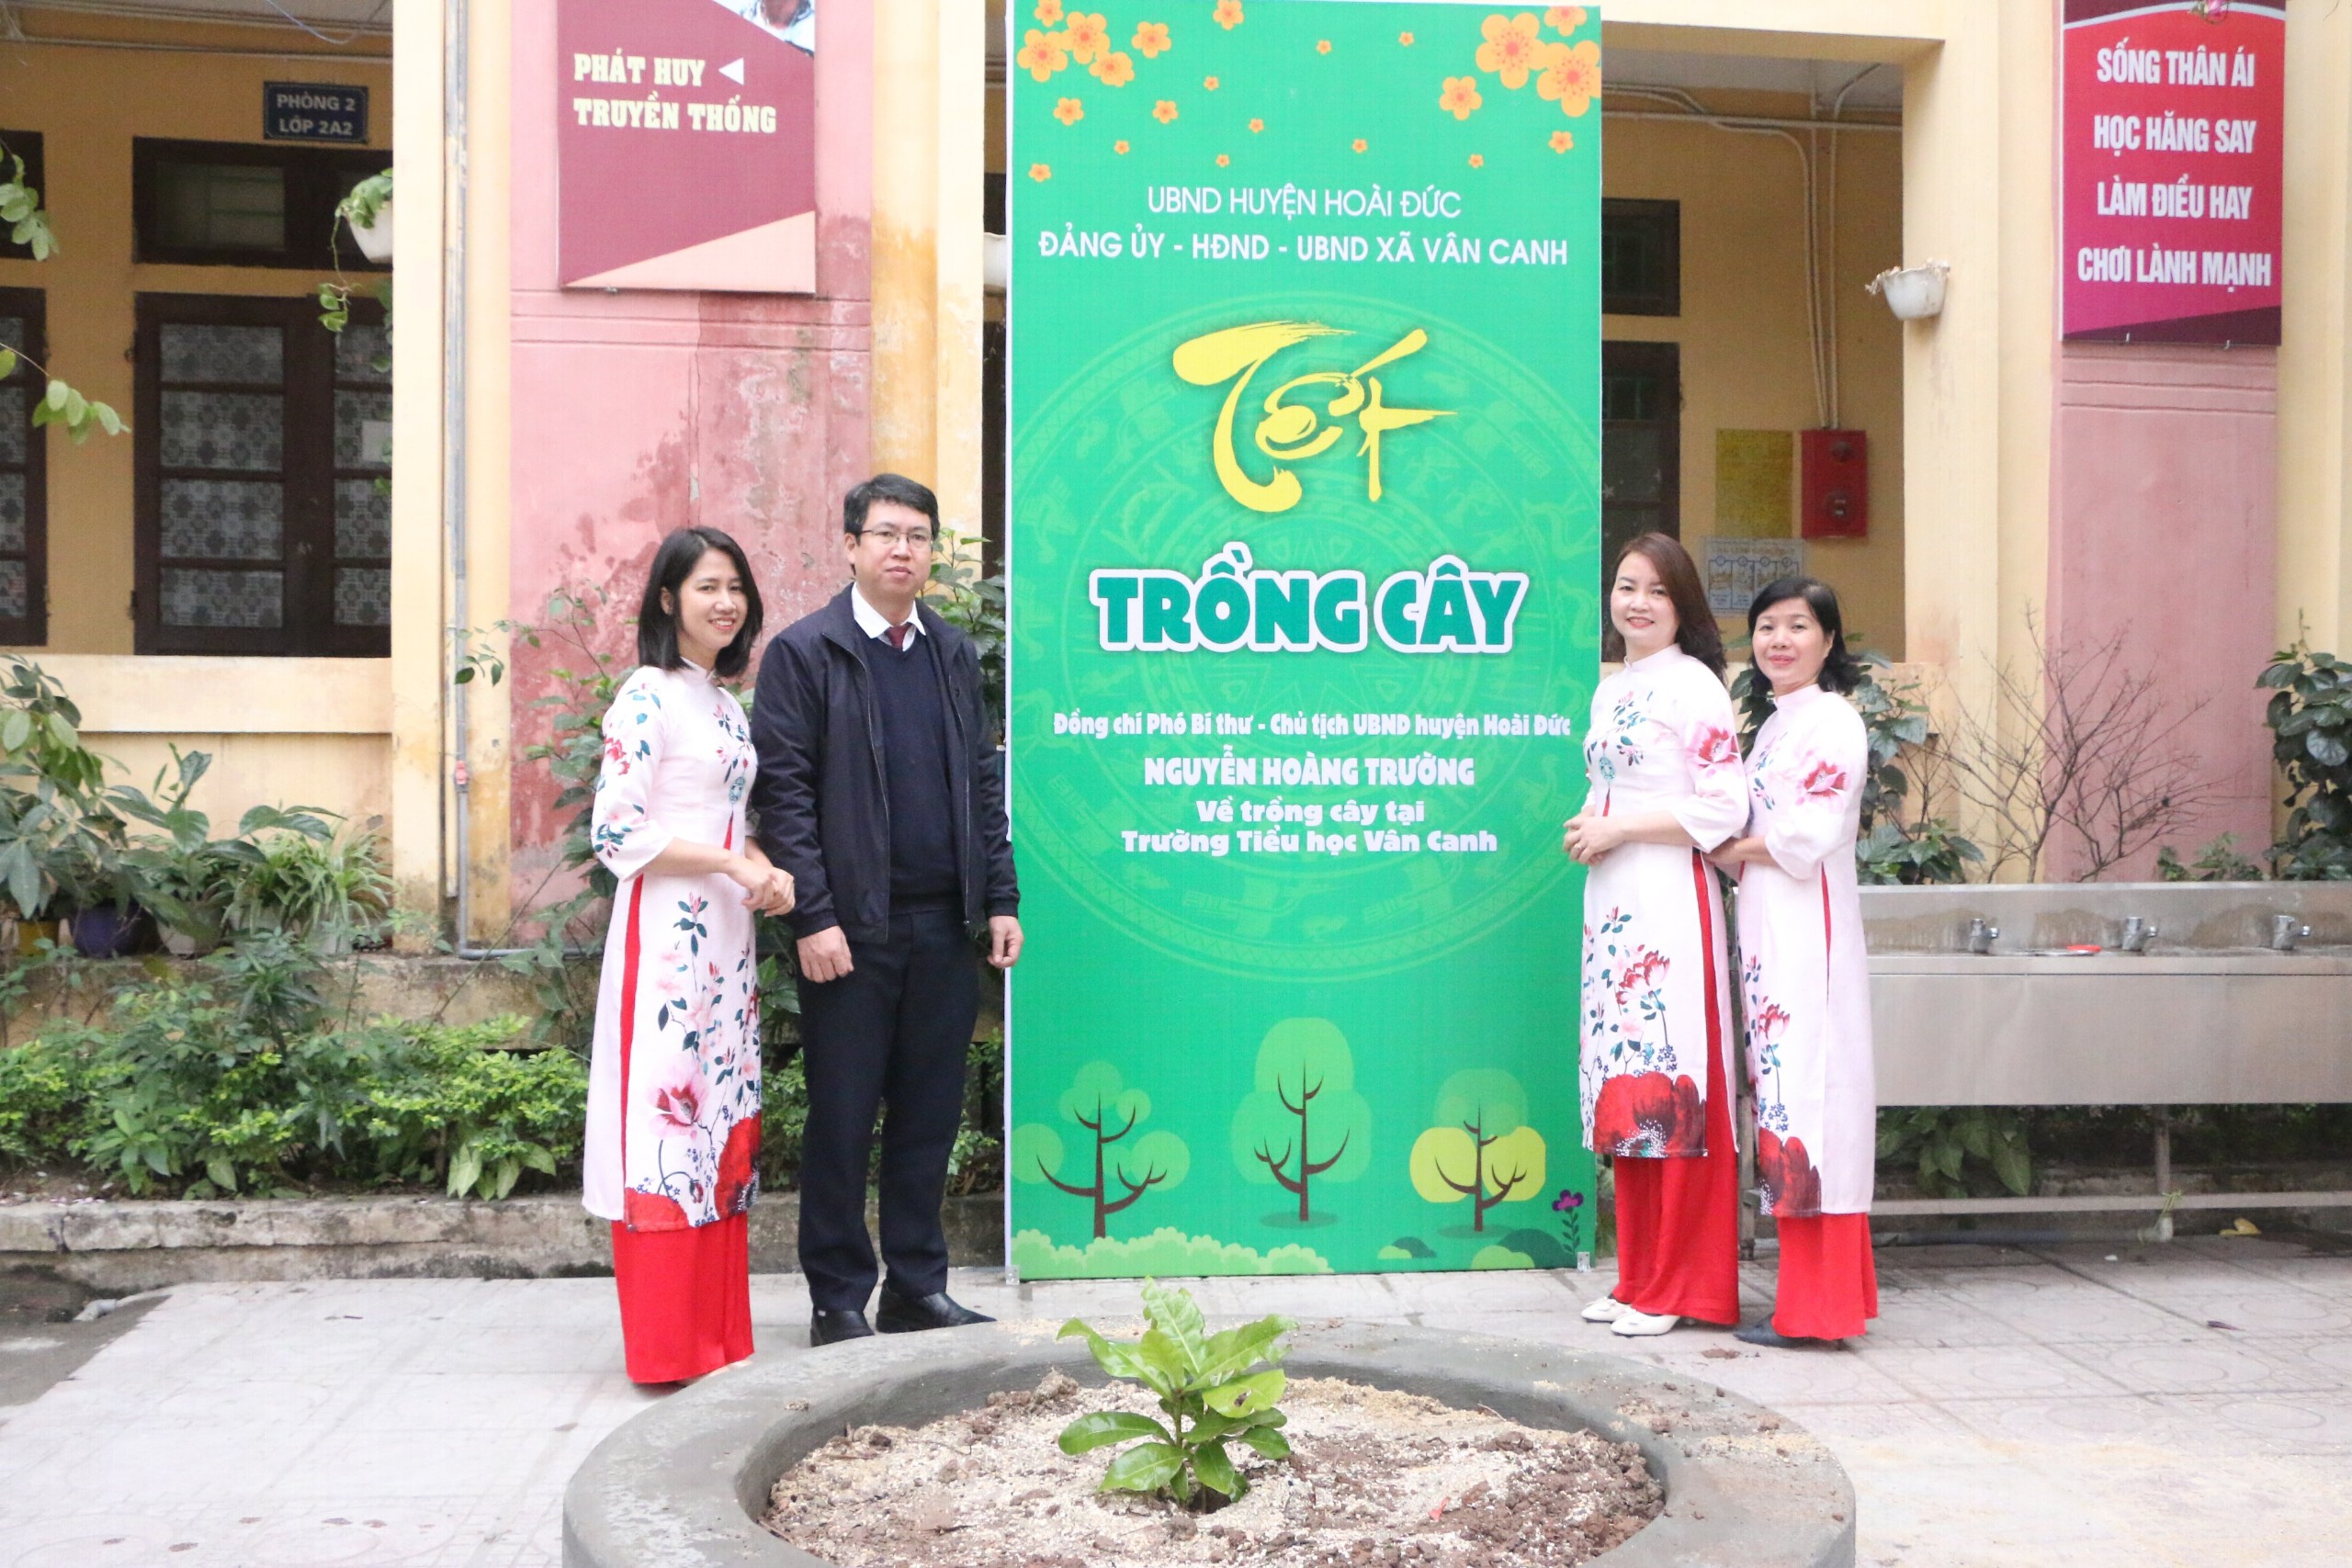 Đồng chí Nguyễn Hoàng Trường - Phó Bí thư huyện Ủy - Chủ tịch UBND huyện Hoài Đức trồng cây tại trường tiểu học Vân Canh